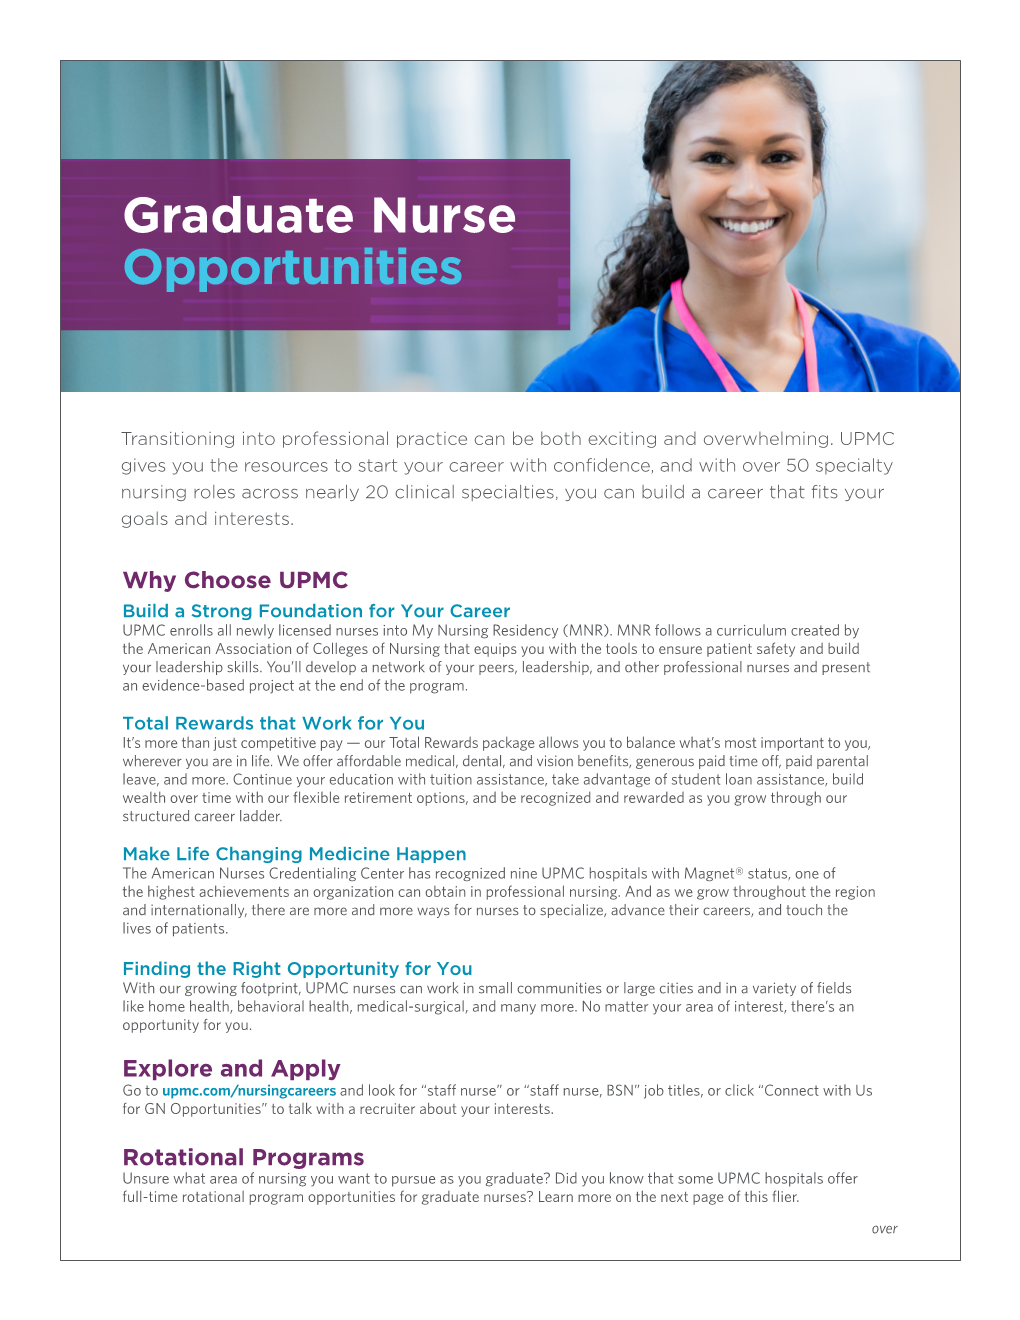 Graduate Nurse Opportunities